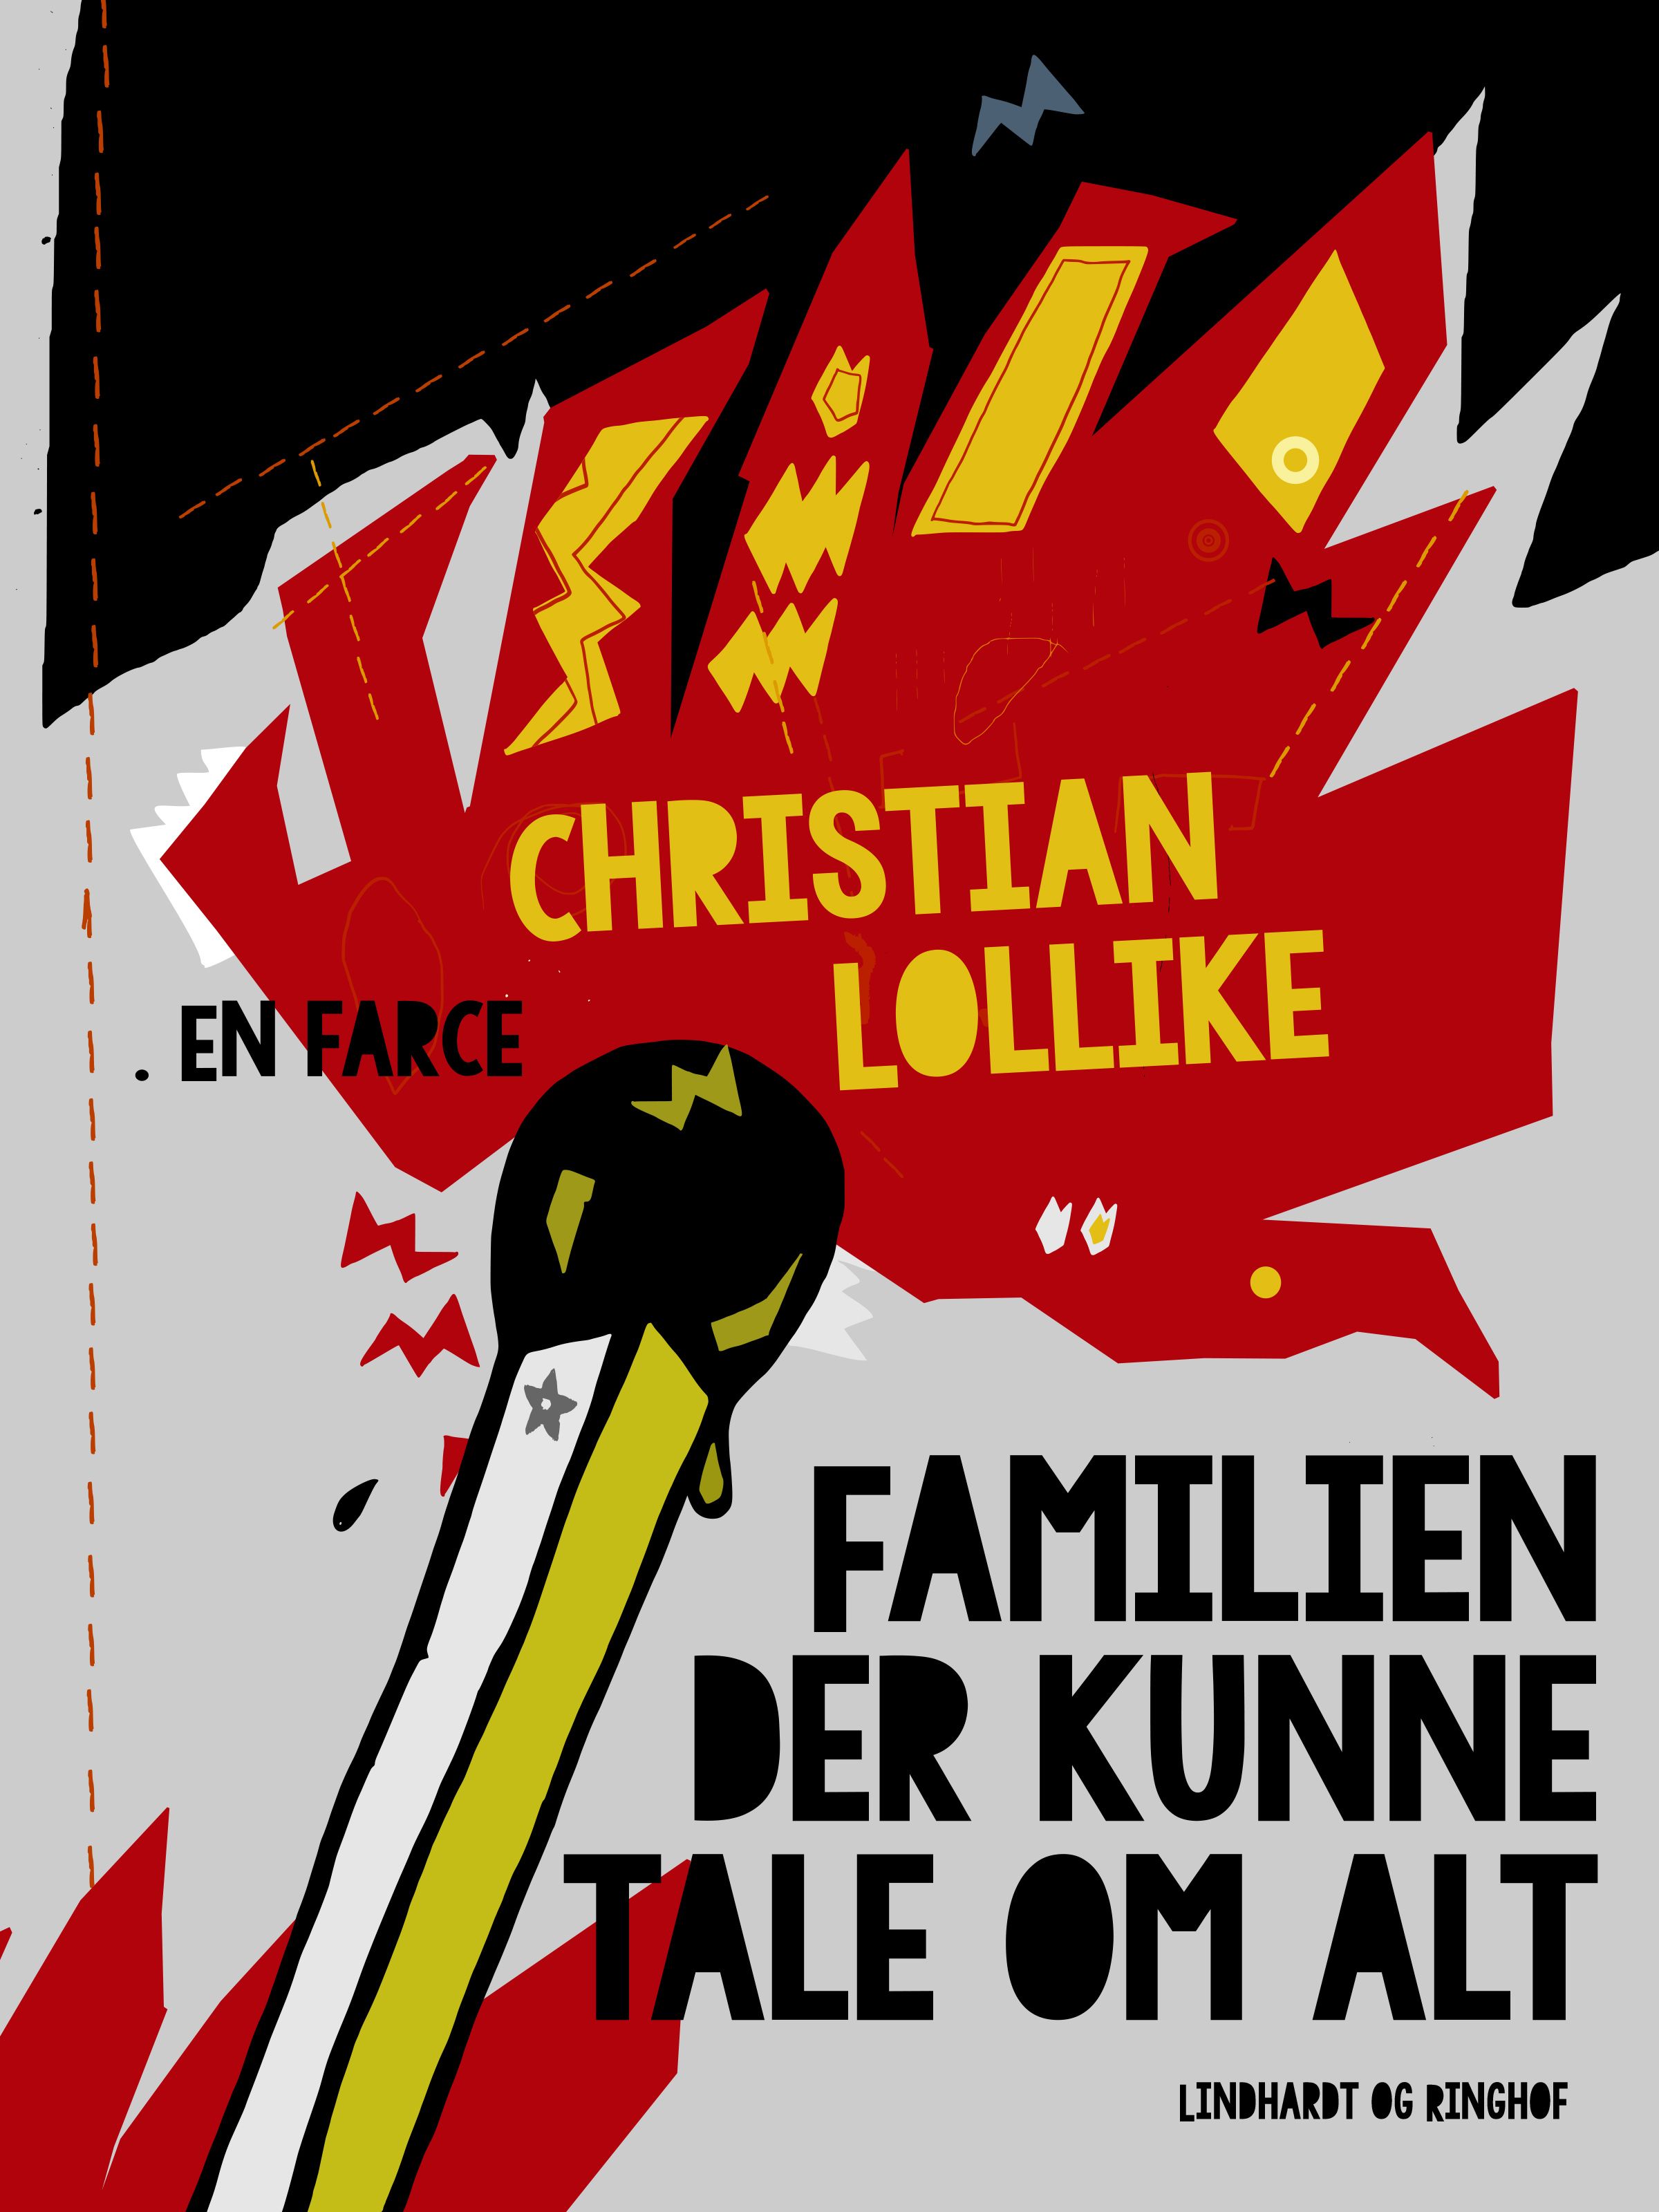 Familien der kunne tale om alt. En farce, eBook by Christian Lollike